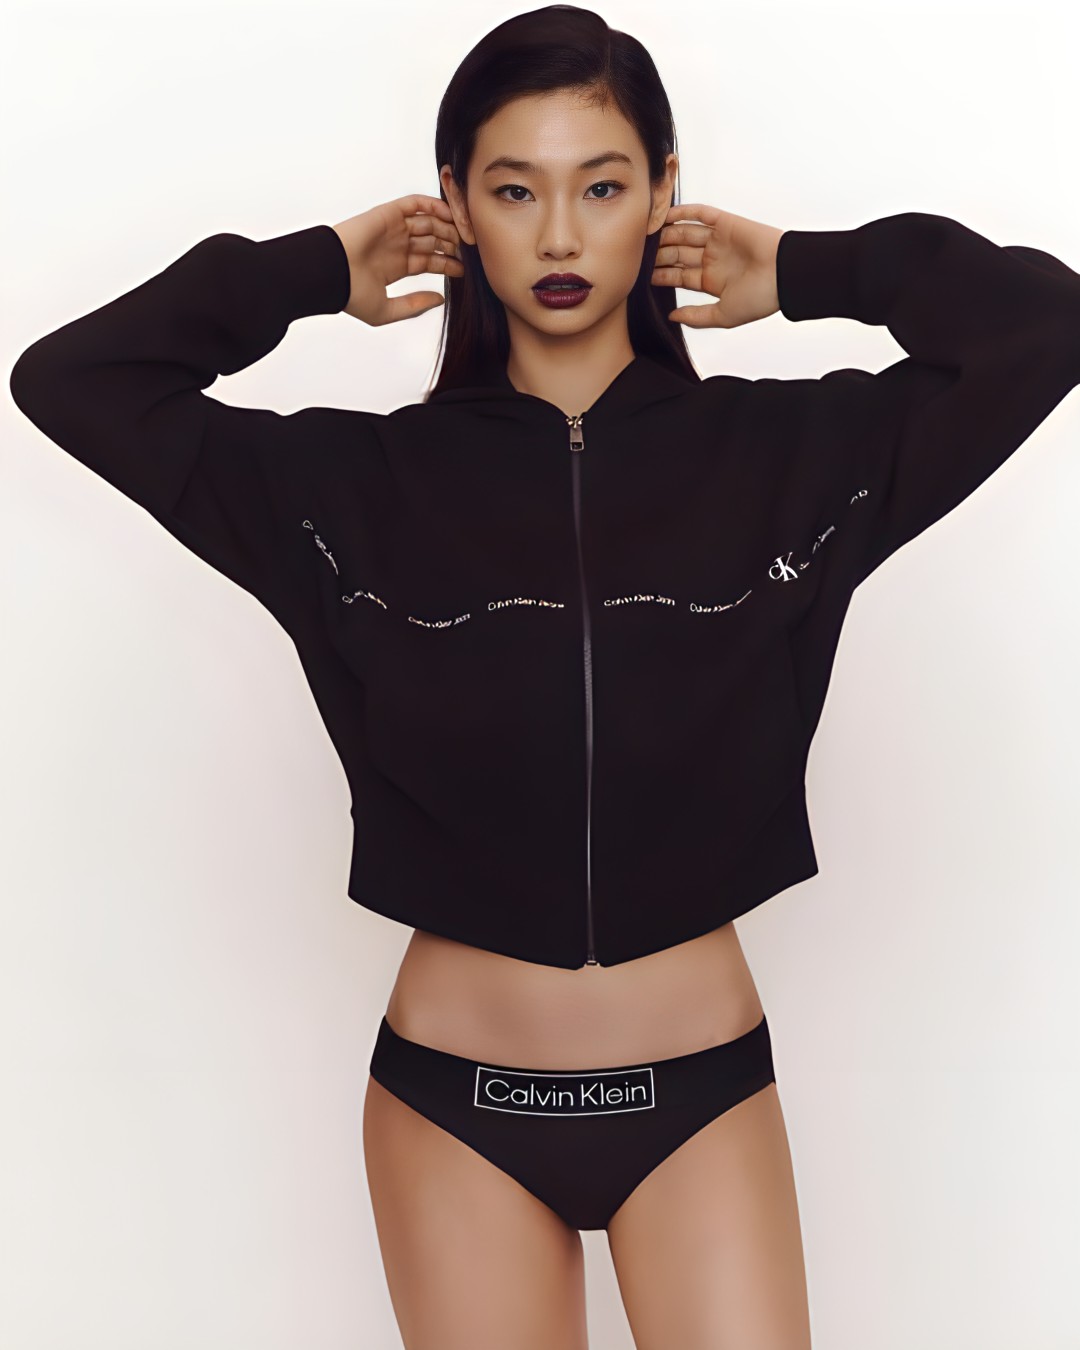 Jung Hoyeon's Calvin Klein Underwear